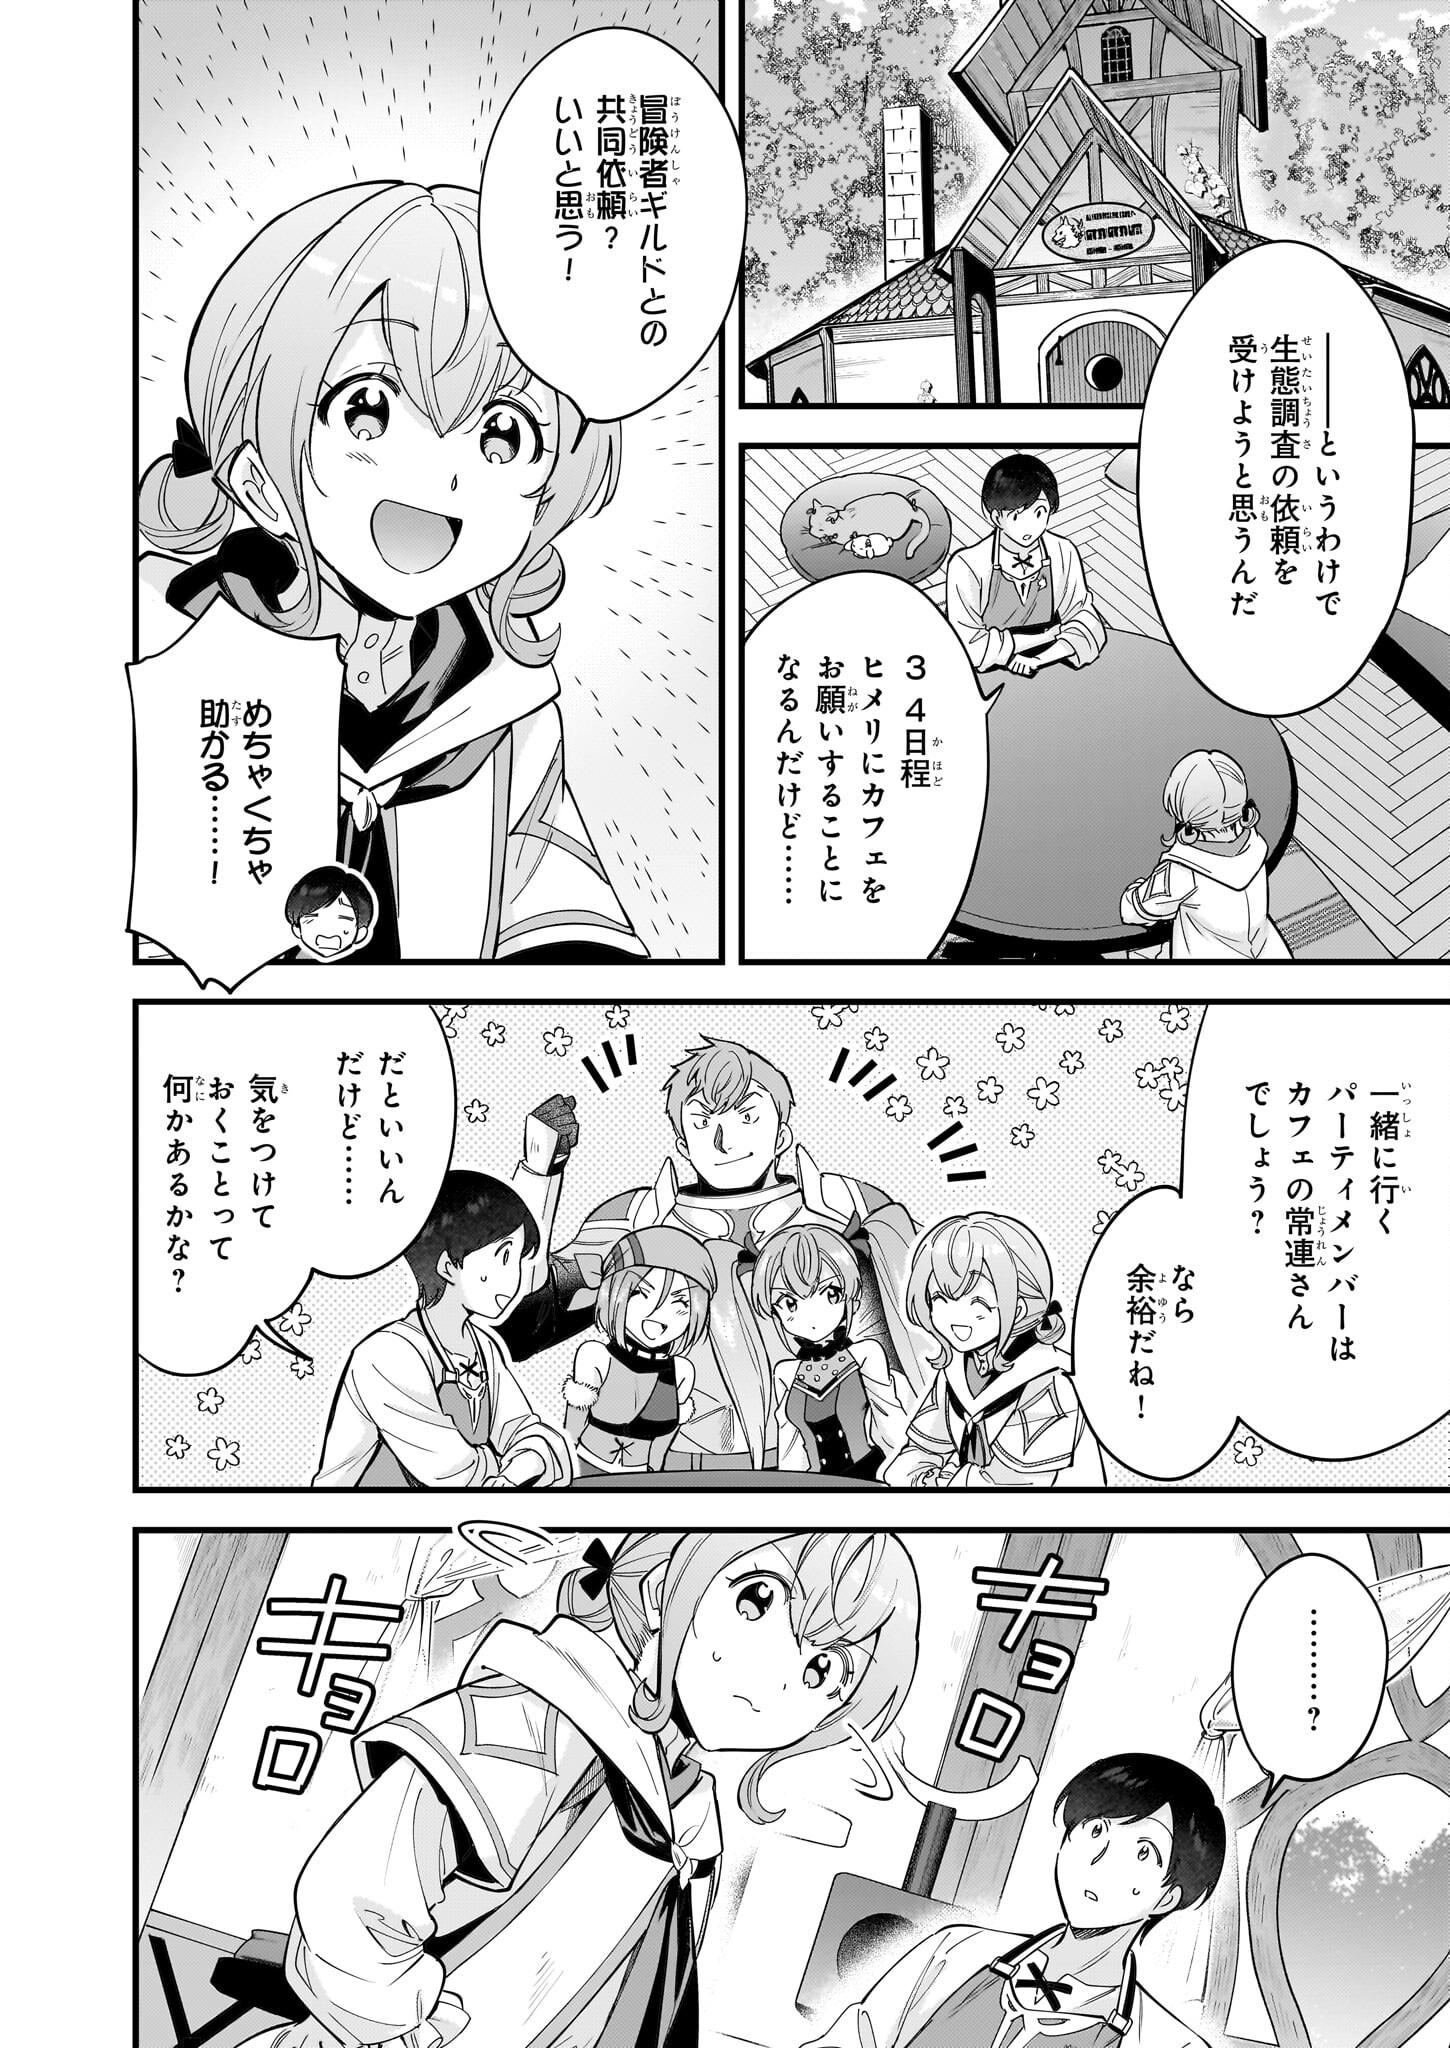 Isekai Mofumofu Cafe - Chapter 26 - Page 2